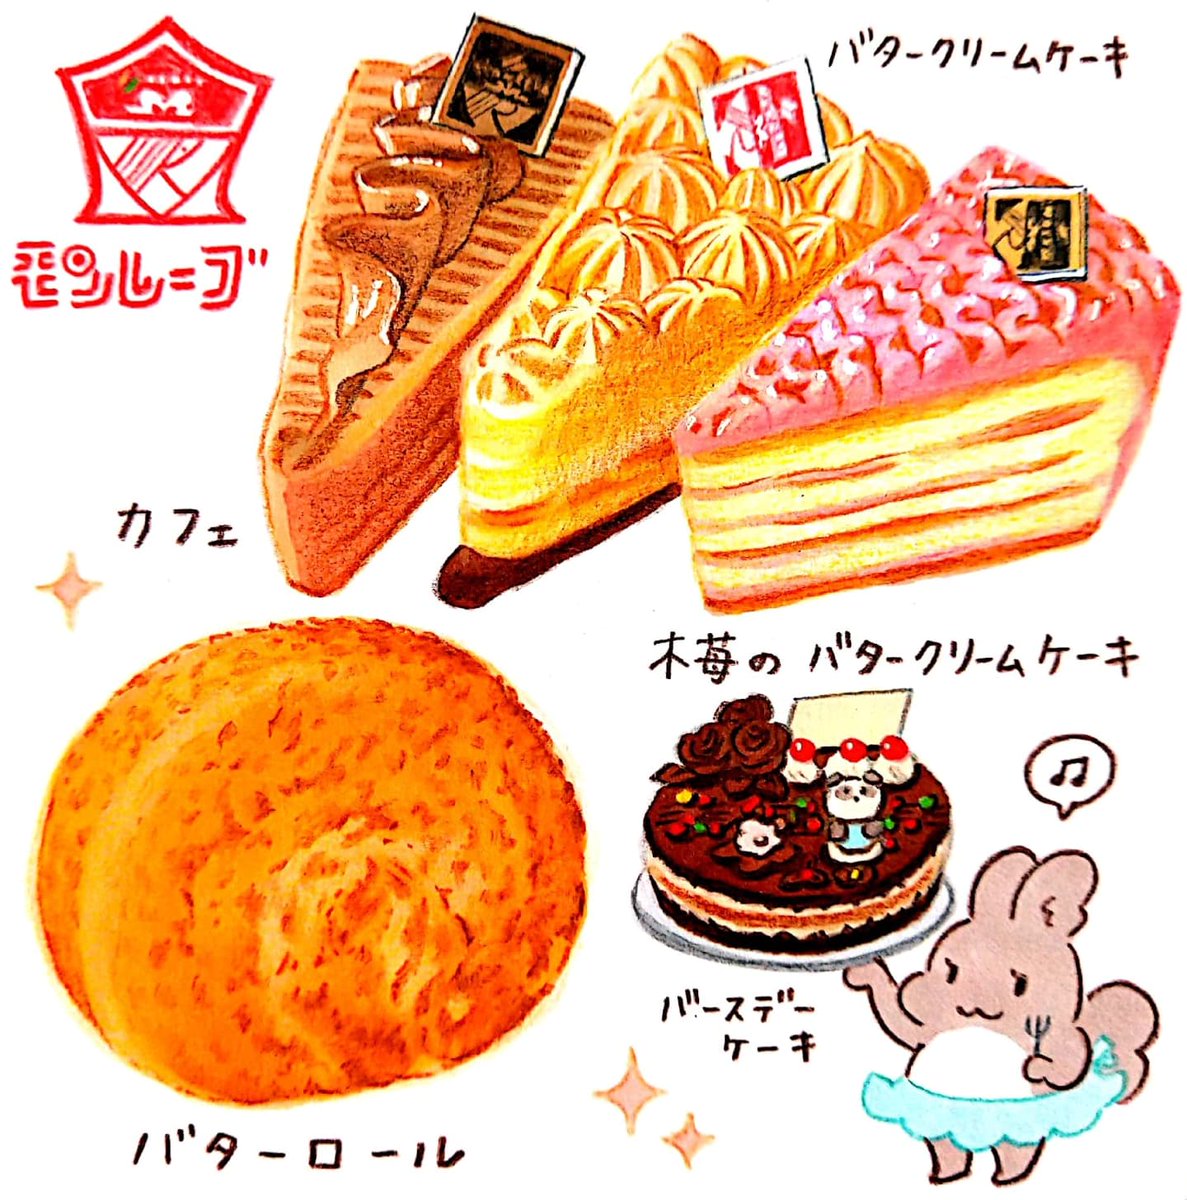 今日は #洋菓子の日 🍰
・モンレーブ
・カフェ・ド・ロマン
・菓子処梅屋
・くろねこニャーゴのお菓子屋さん
#北海道 #イラスト #食べ物イラスト 